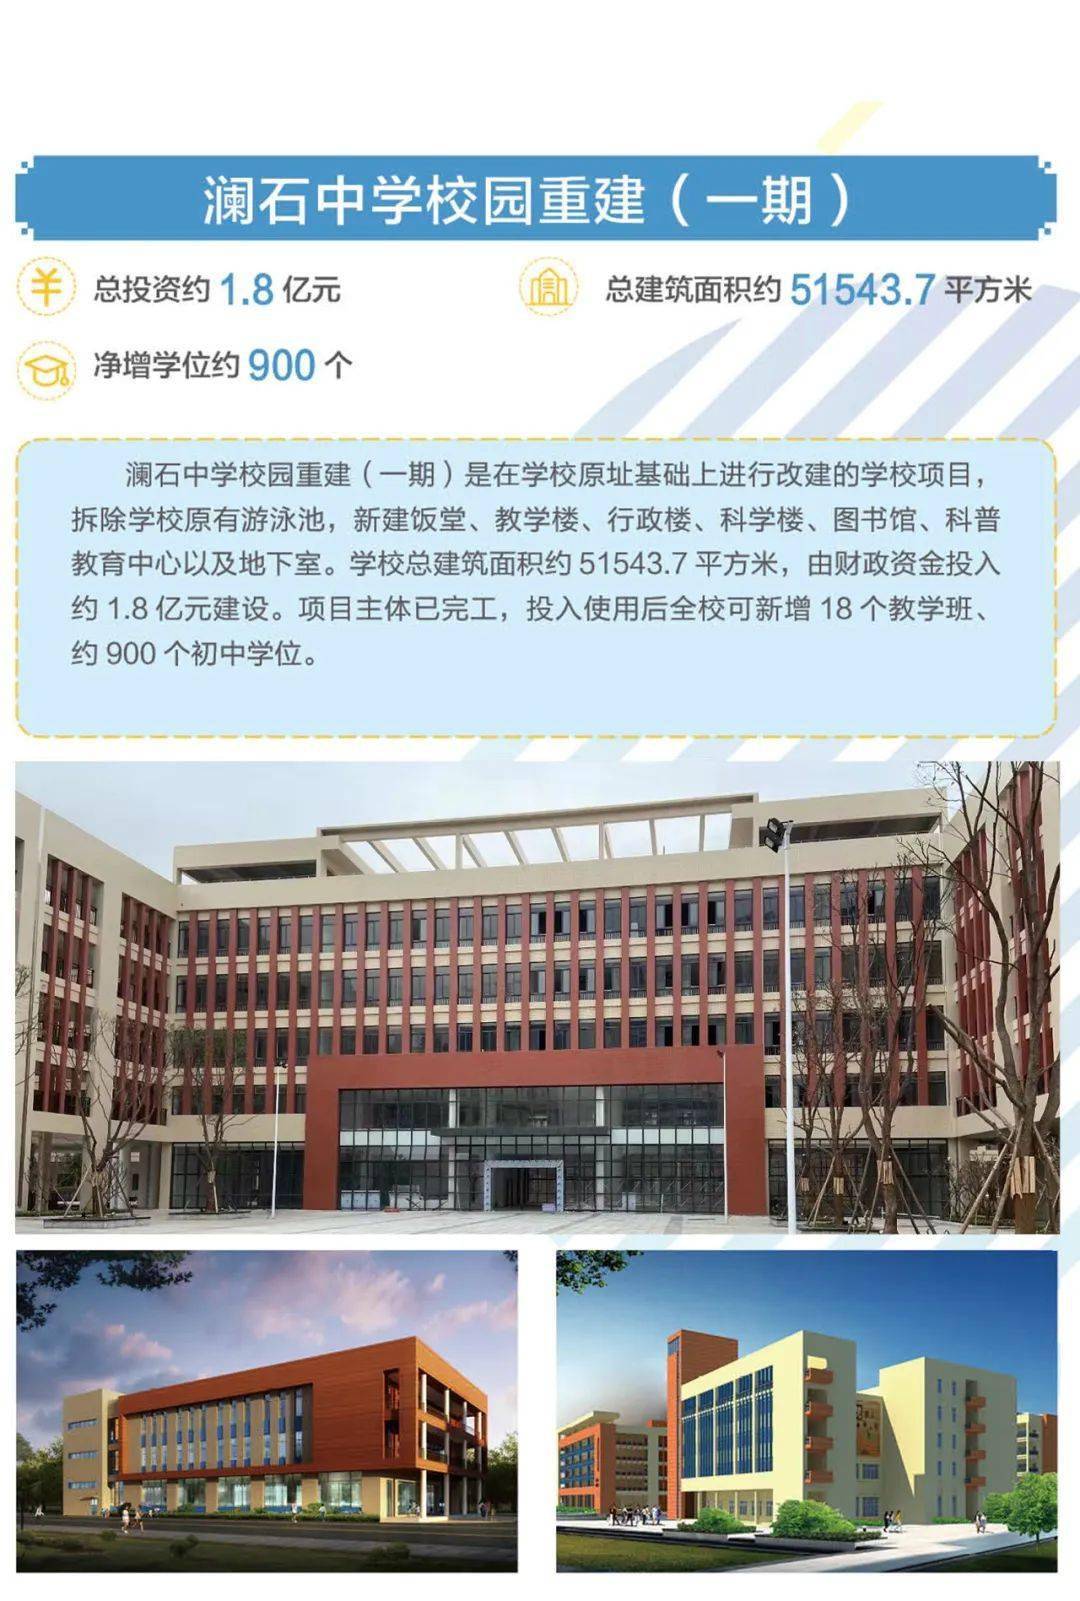 禅城新改扩建学校"9 7 1"工程岁末年初完工的还有 澜石中学重 建